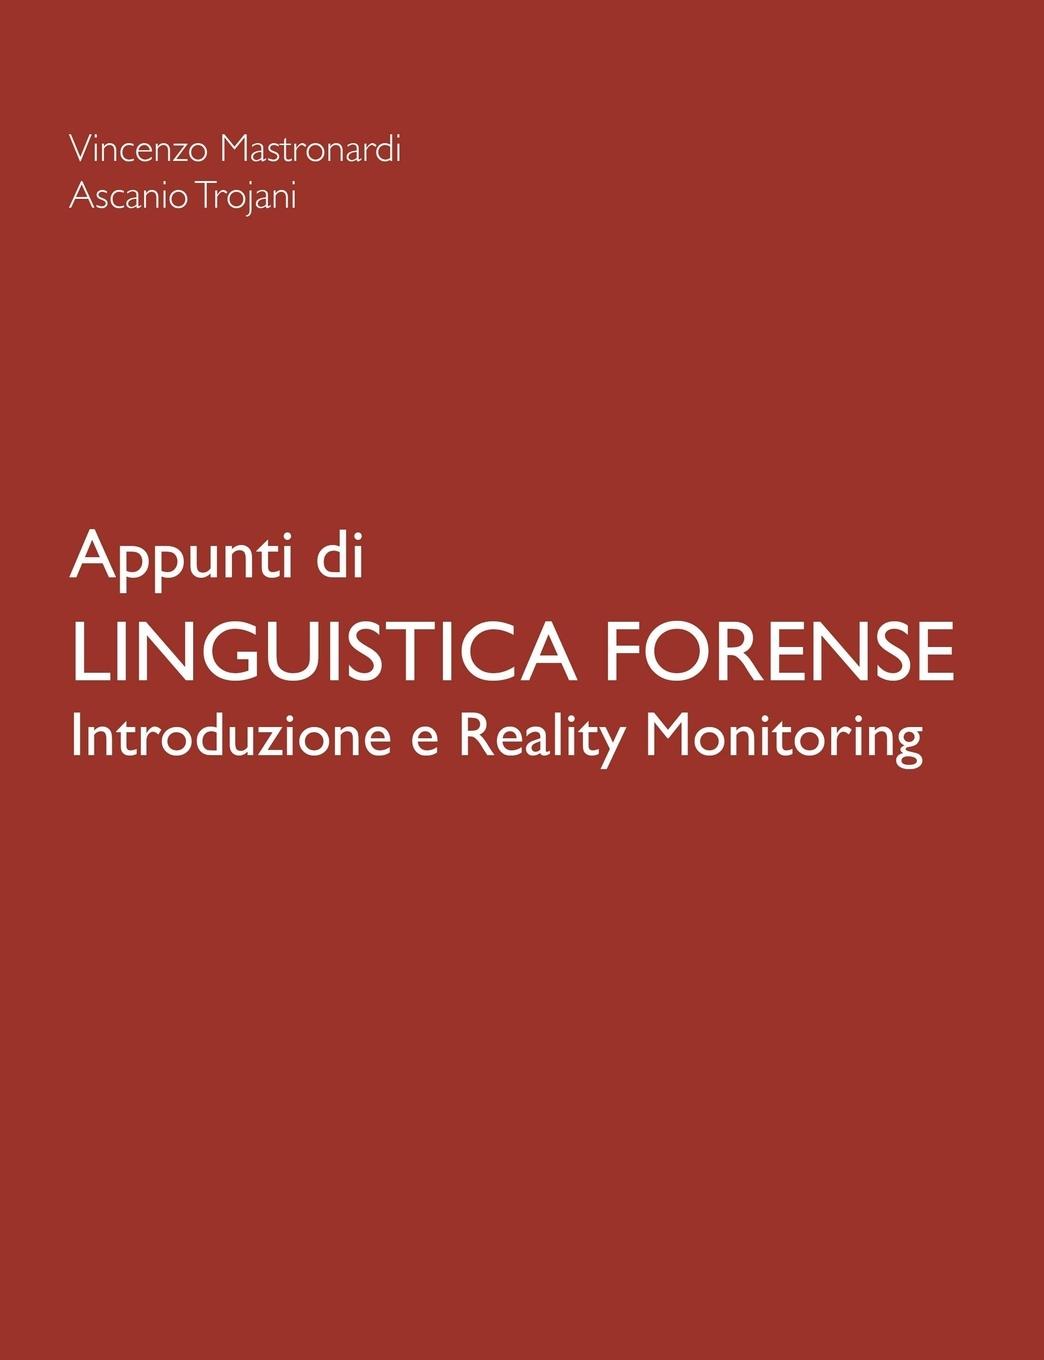 Appunti di Linguistica Forense - Introduzione e Reality Monitoring - Trojani, Ascanio Mastronardi, Vincenzo